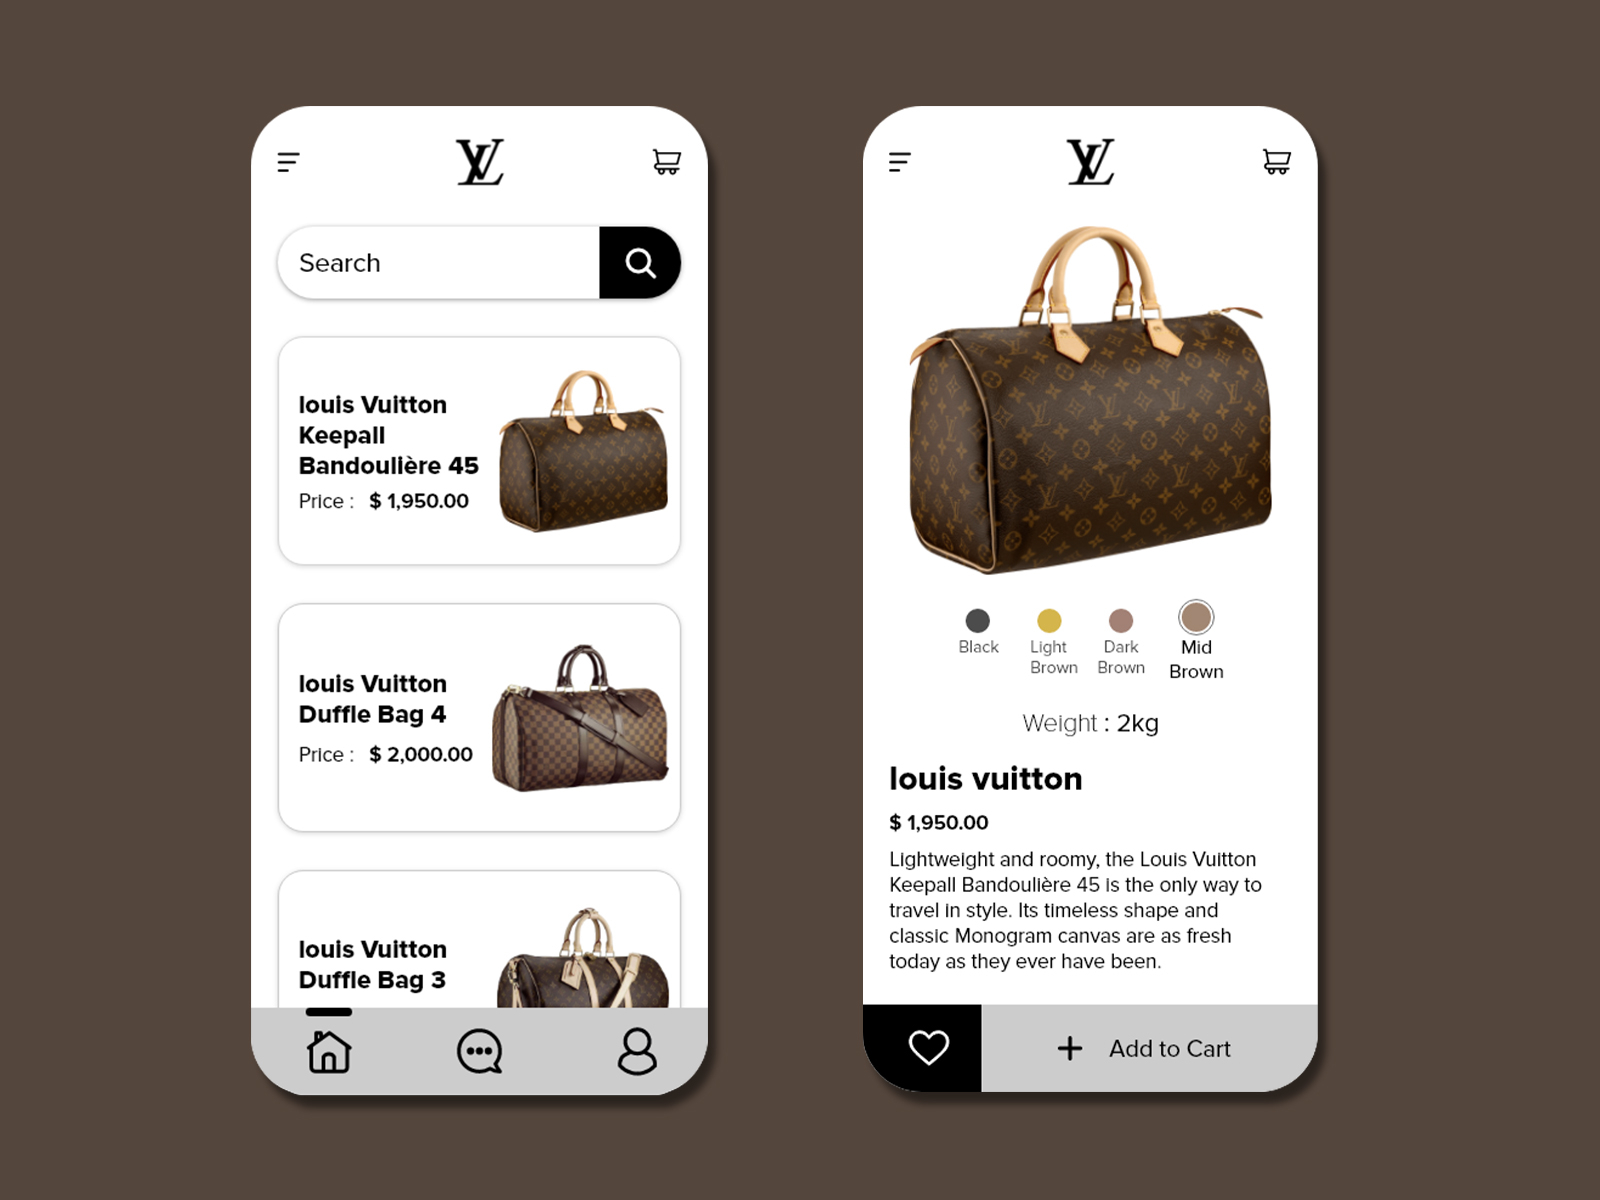 LV Online Shopping Mobile App by Minhal Ali Awan on Dribbble